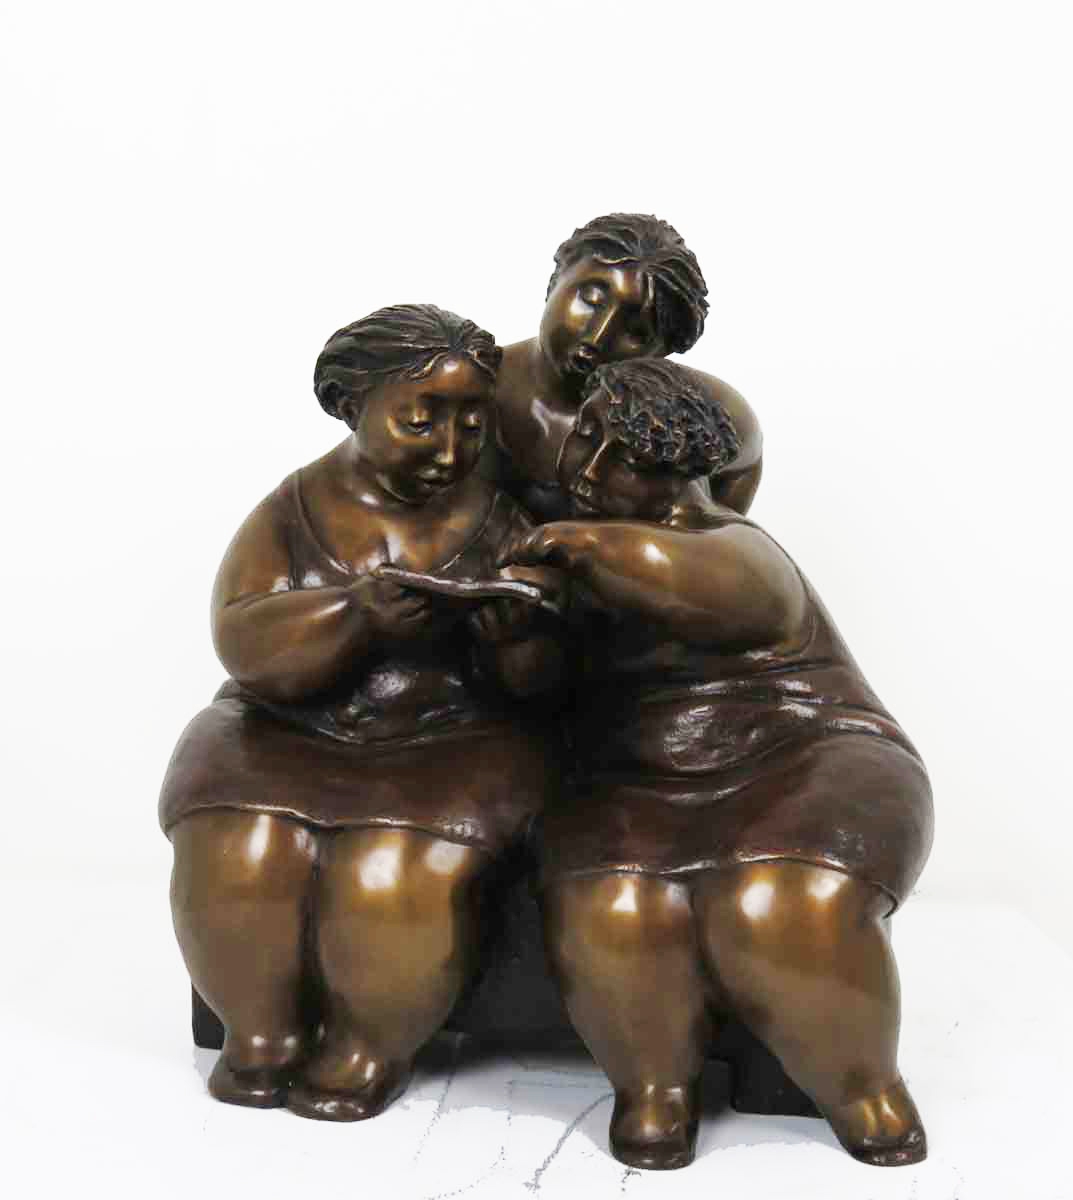 Sculpture de bronze par Rose-Aimée Bélanger à vendre en galerie d'art à Montréal. « Les liseuses » disponible à la Galerie Blanche.